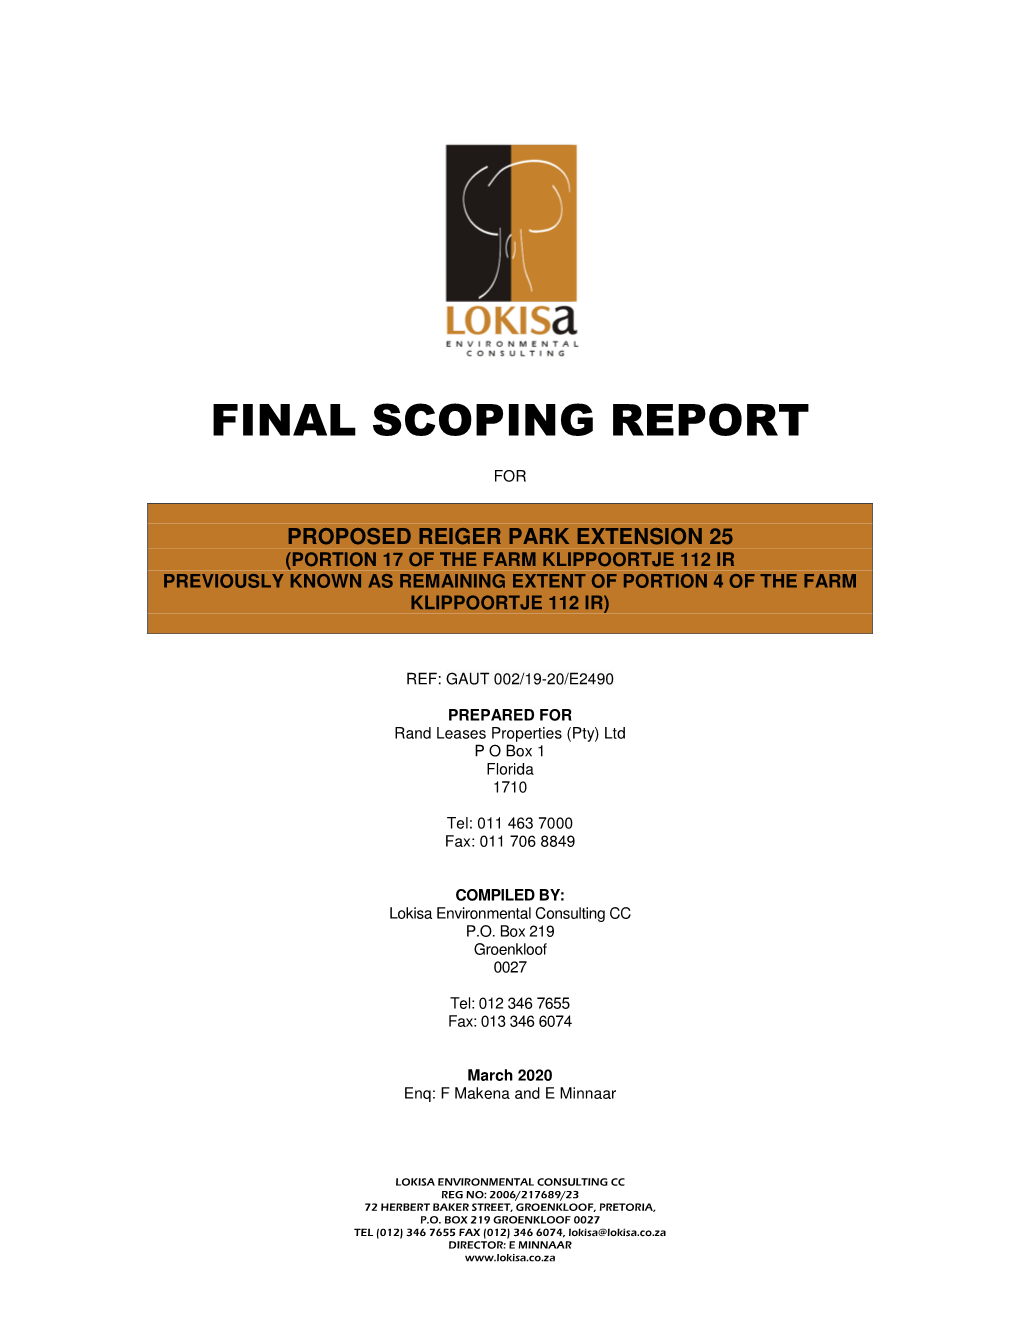 Reiger Park X 25 Final Scoping Report